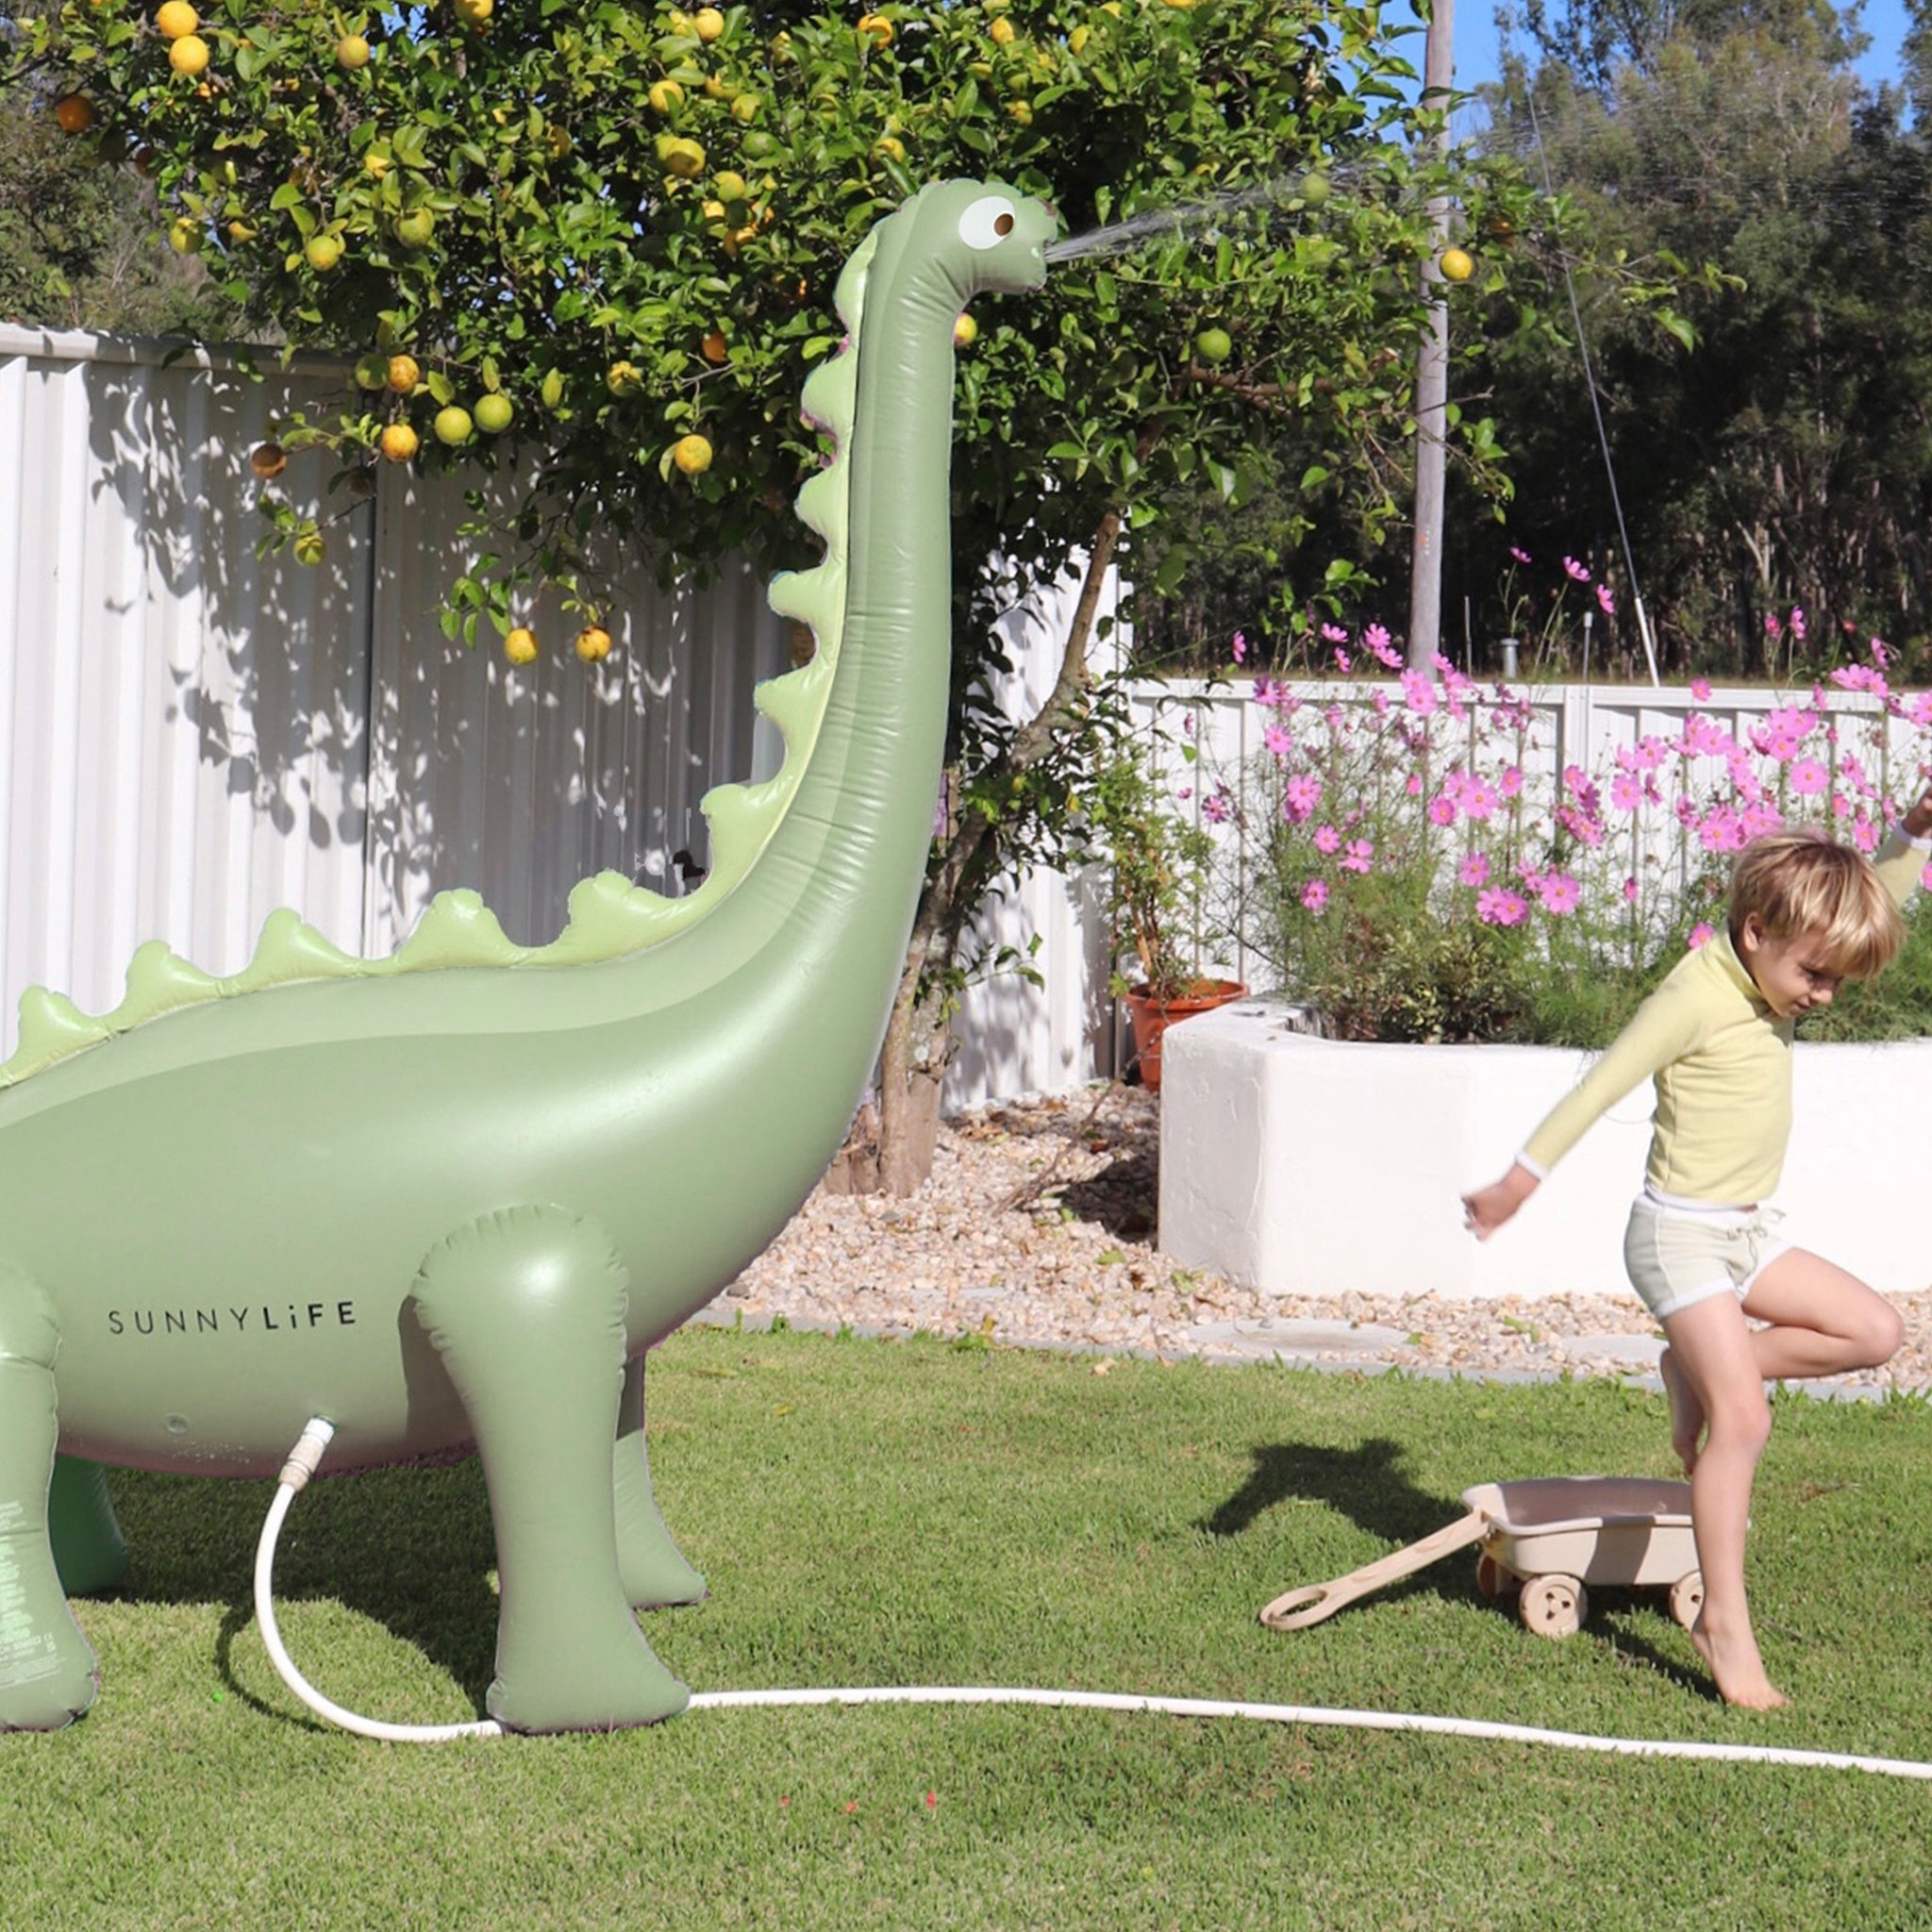 Dino Giant Sprinkler | Into the Wild Khaki